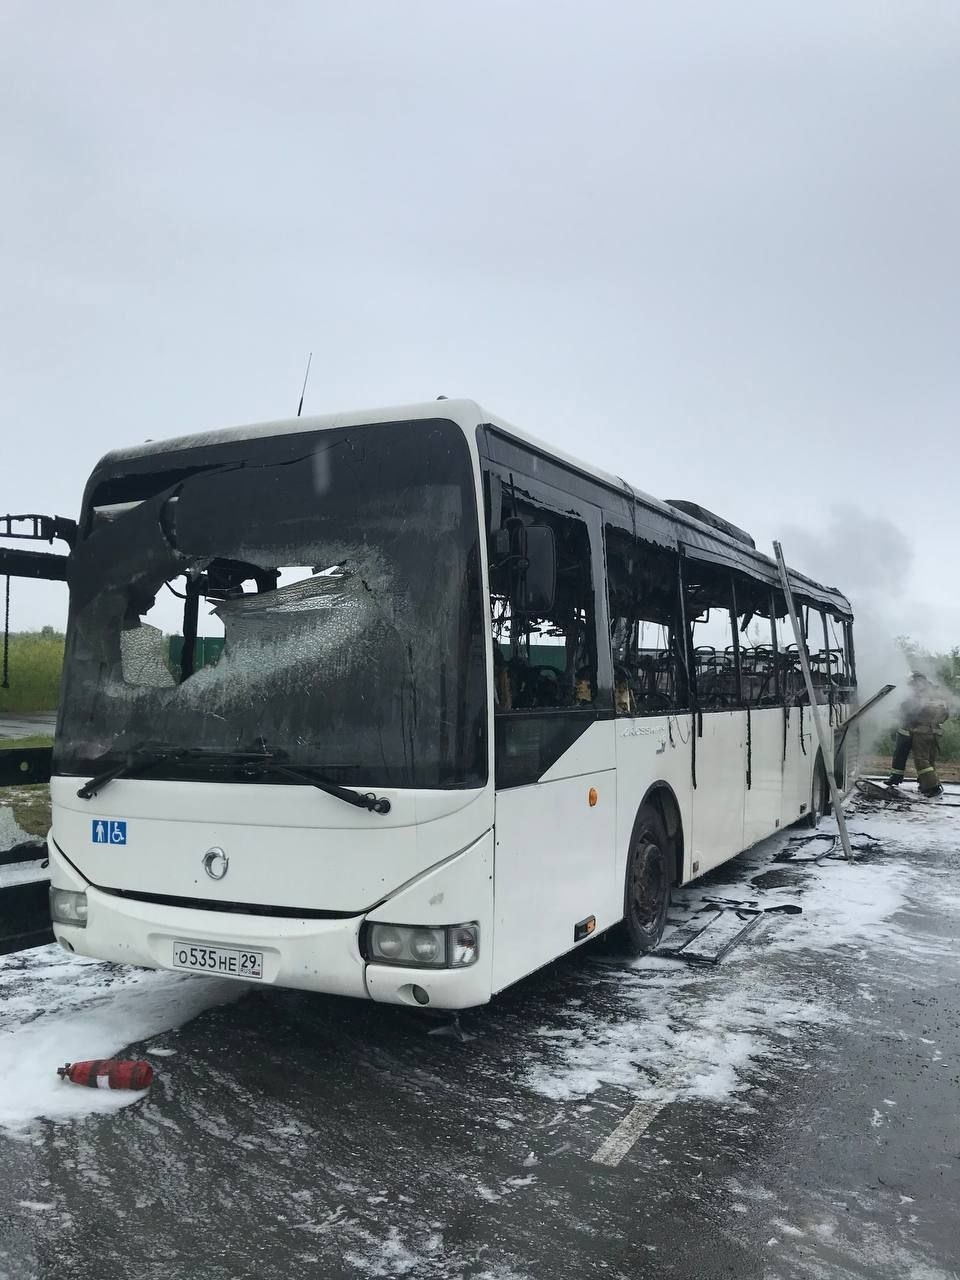 Возгорание произошло, когда автобус стоял на стоянке, пассажиров в нем не было